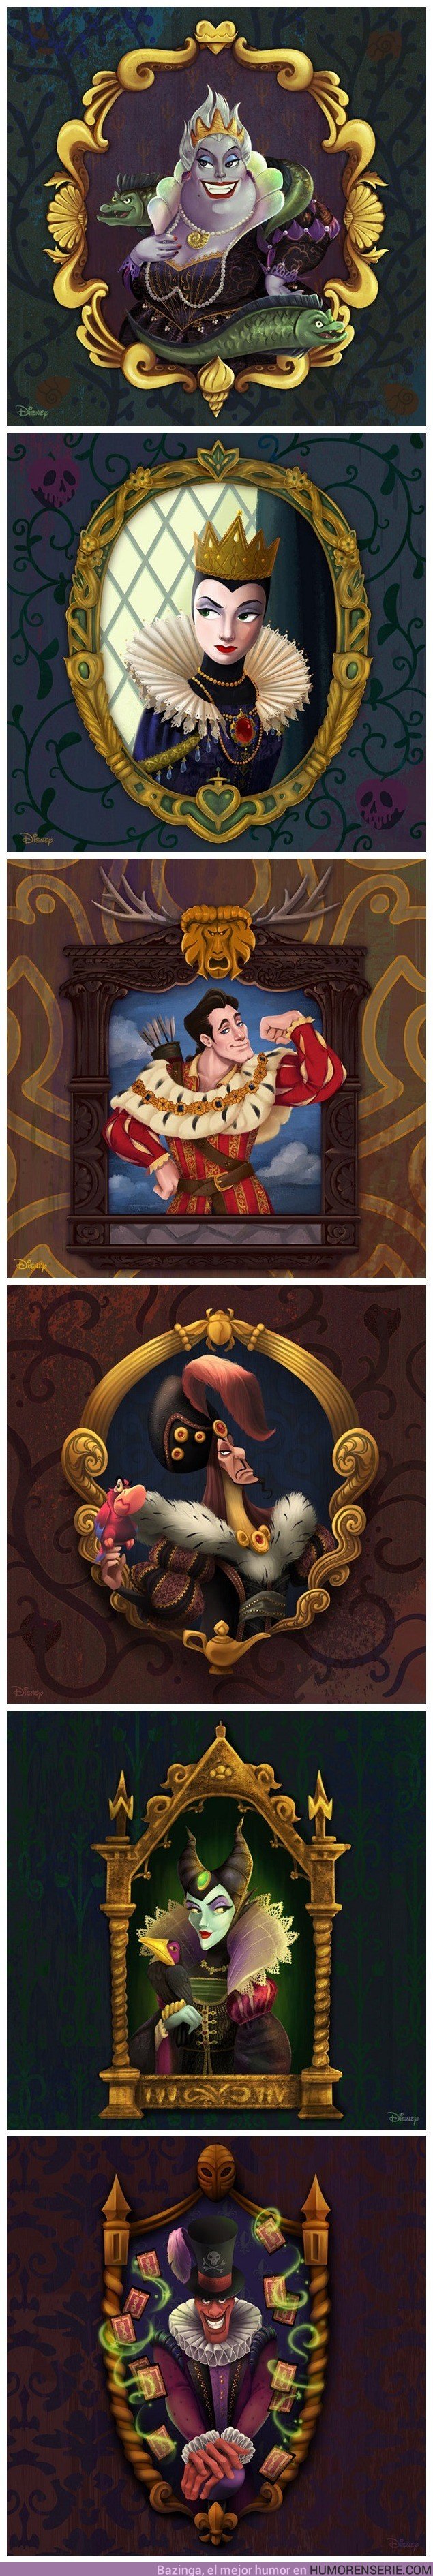 28396 - Estos son los villanos Disney en versión renacentista, ¡muy artísticos!